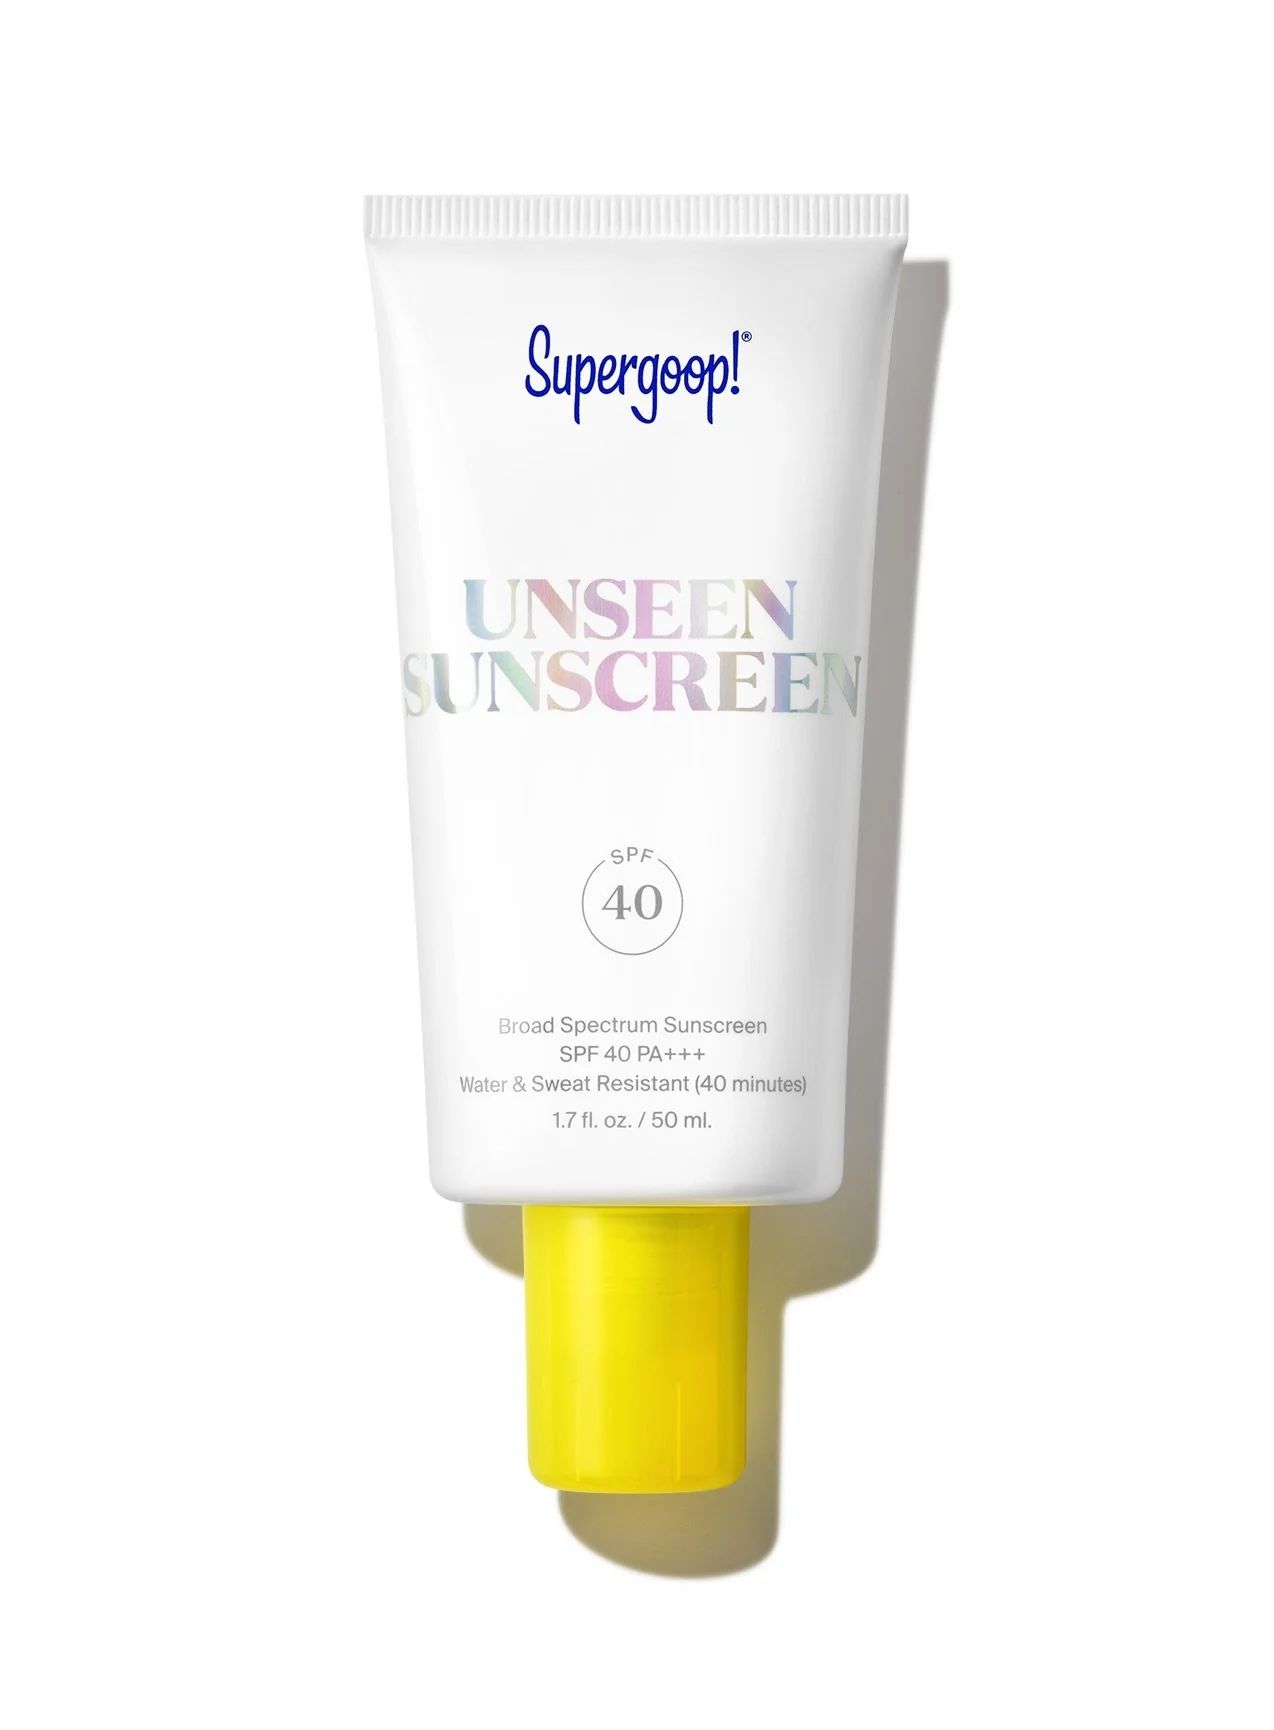 Unseen Sunscreen SPF 40 | Supergoop